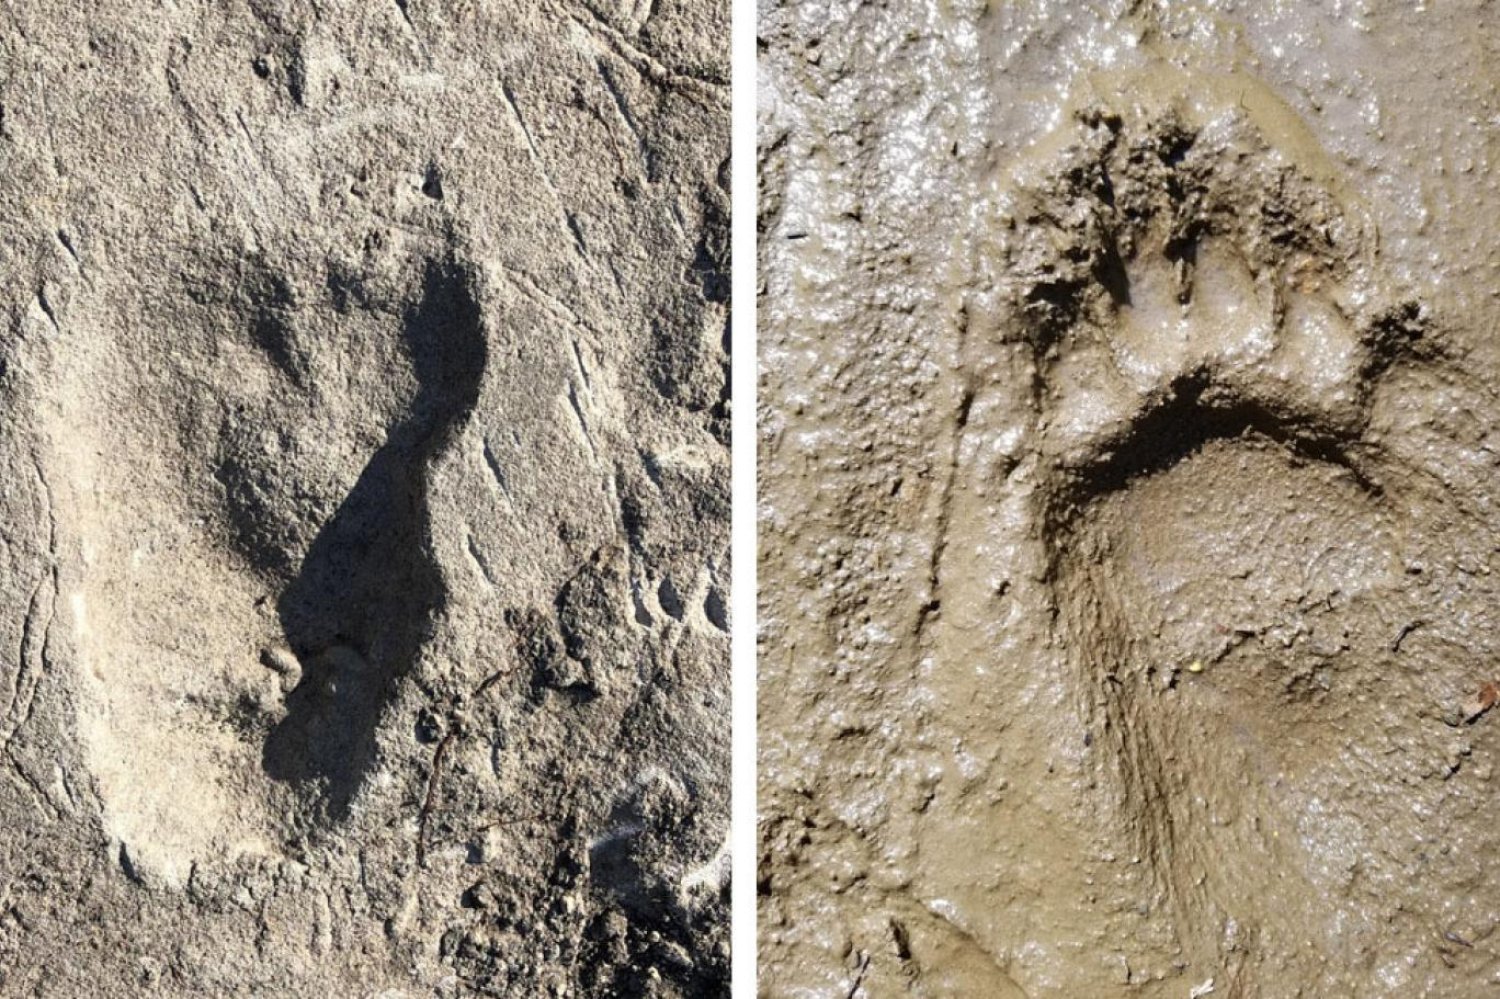 Araştırma ekibi keşiften 40 yıl sonra ayak izlerinin detaylı haritasını çıkardı. Solda gizemli homininin ayak izi, sağda ise karşılaştırma için kullanılan ayının izi görülüyor (Ellison McNutt)